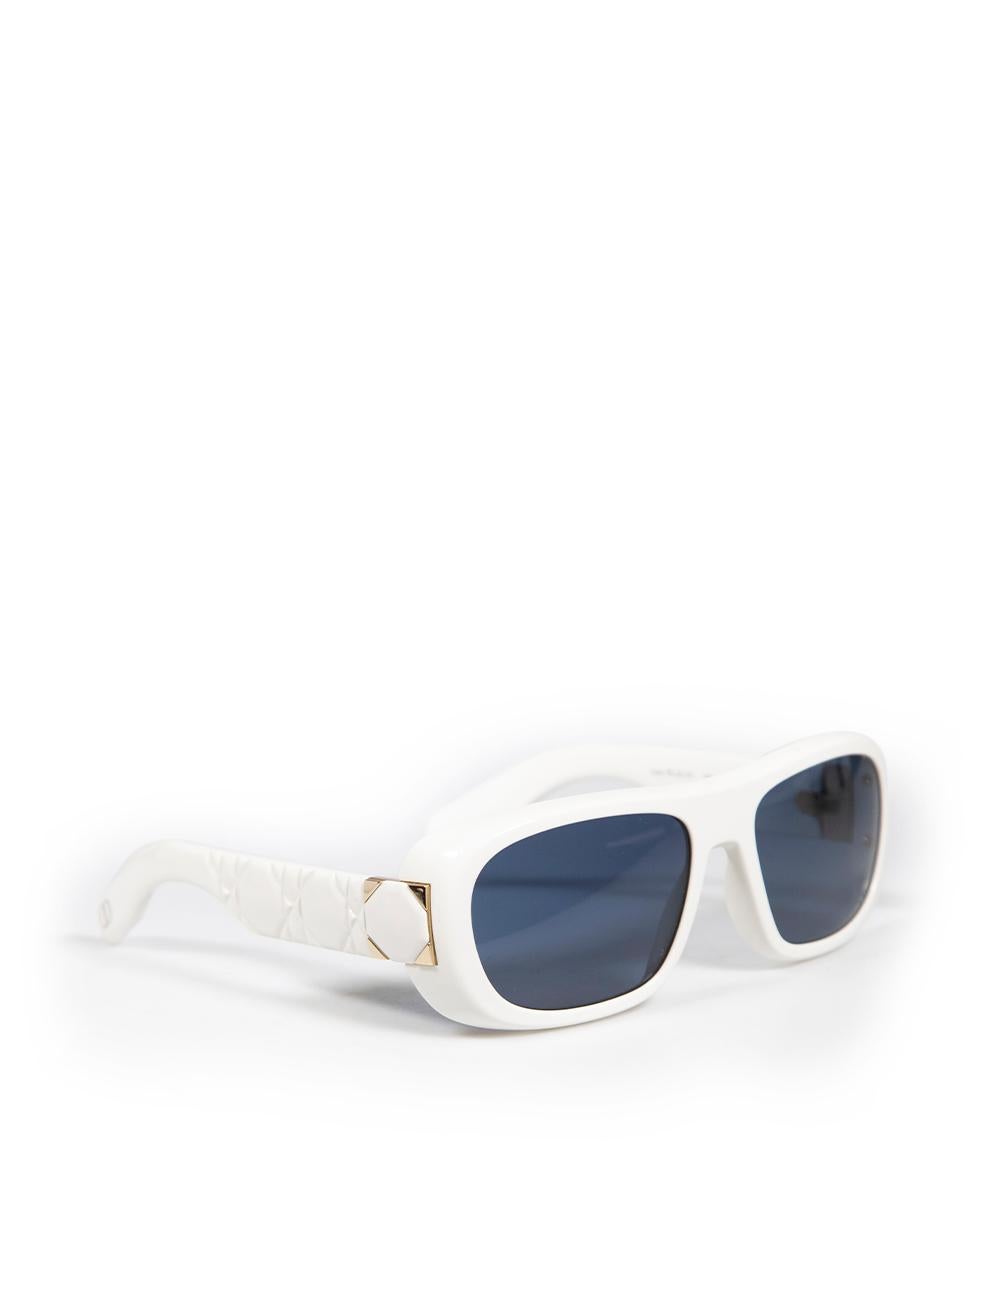 CONDITION ist nie getragen, mit Tags. Keine sichtbaren Abnutzungserscheinungen an der Sonnenbrille sind bei diesem neuen Dior-Designer-Wiederverkaufsartikel zu erkennen. Diese Sonnenbrille wird mit Originaletui, -box und -glasreiniger geliefert.
 
